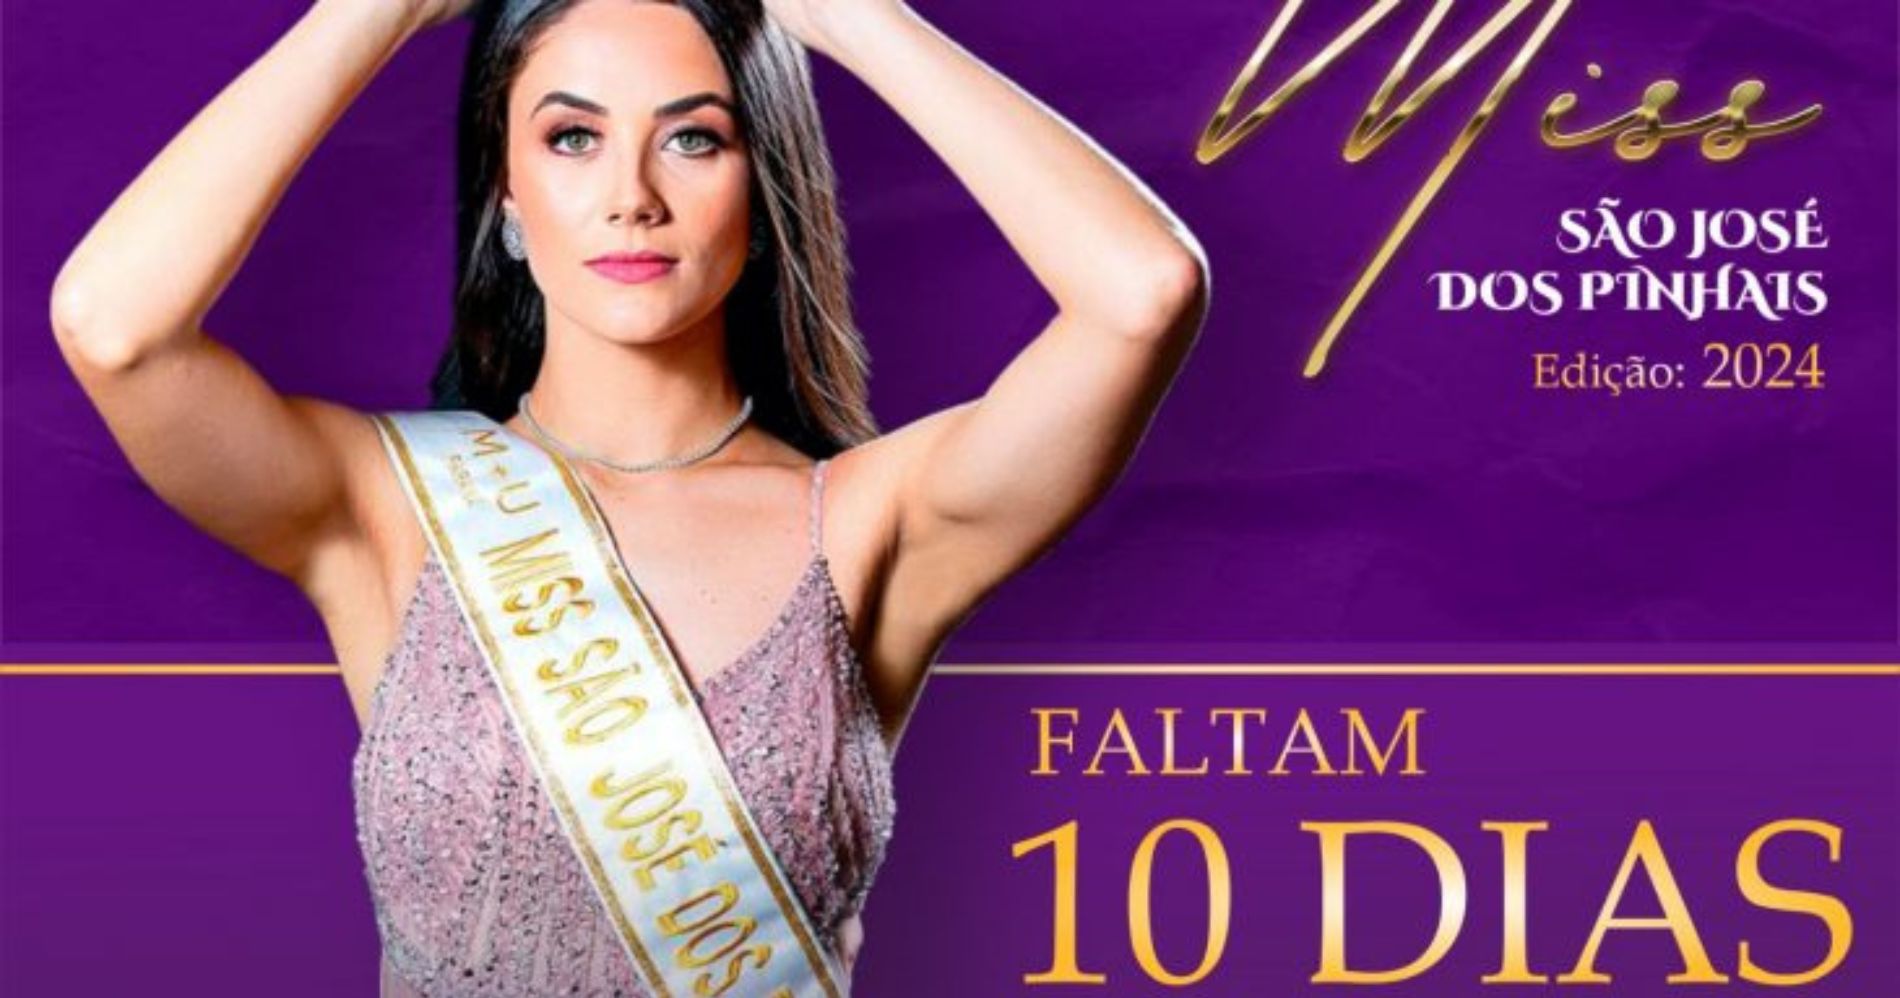 Inscrições para o Miss São José dos Pinhais 2024 estão abertas até 20 de agosto